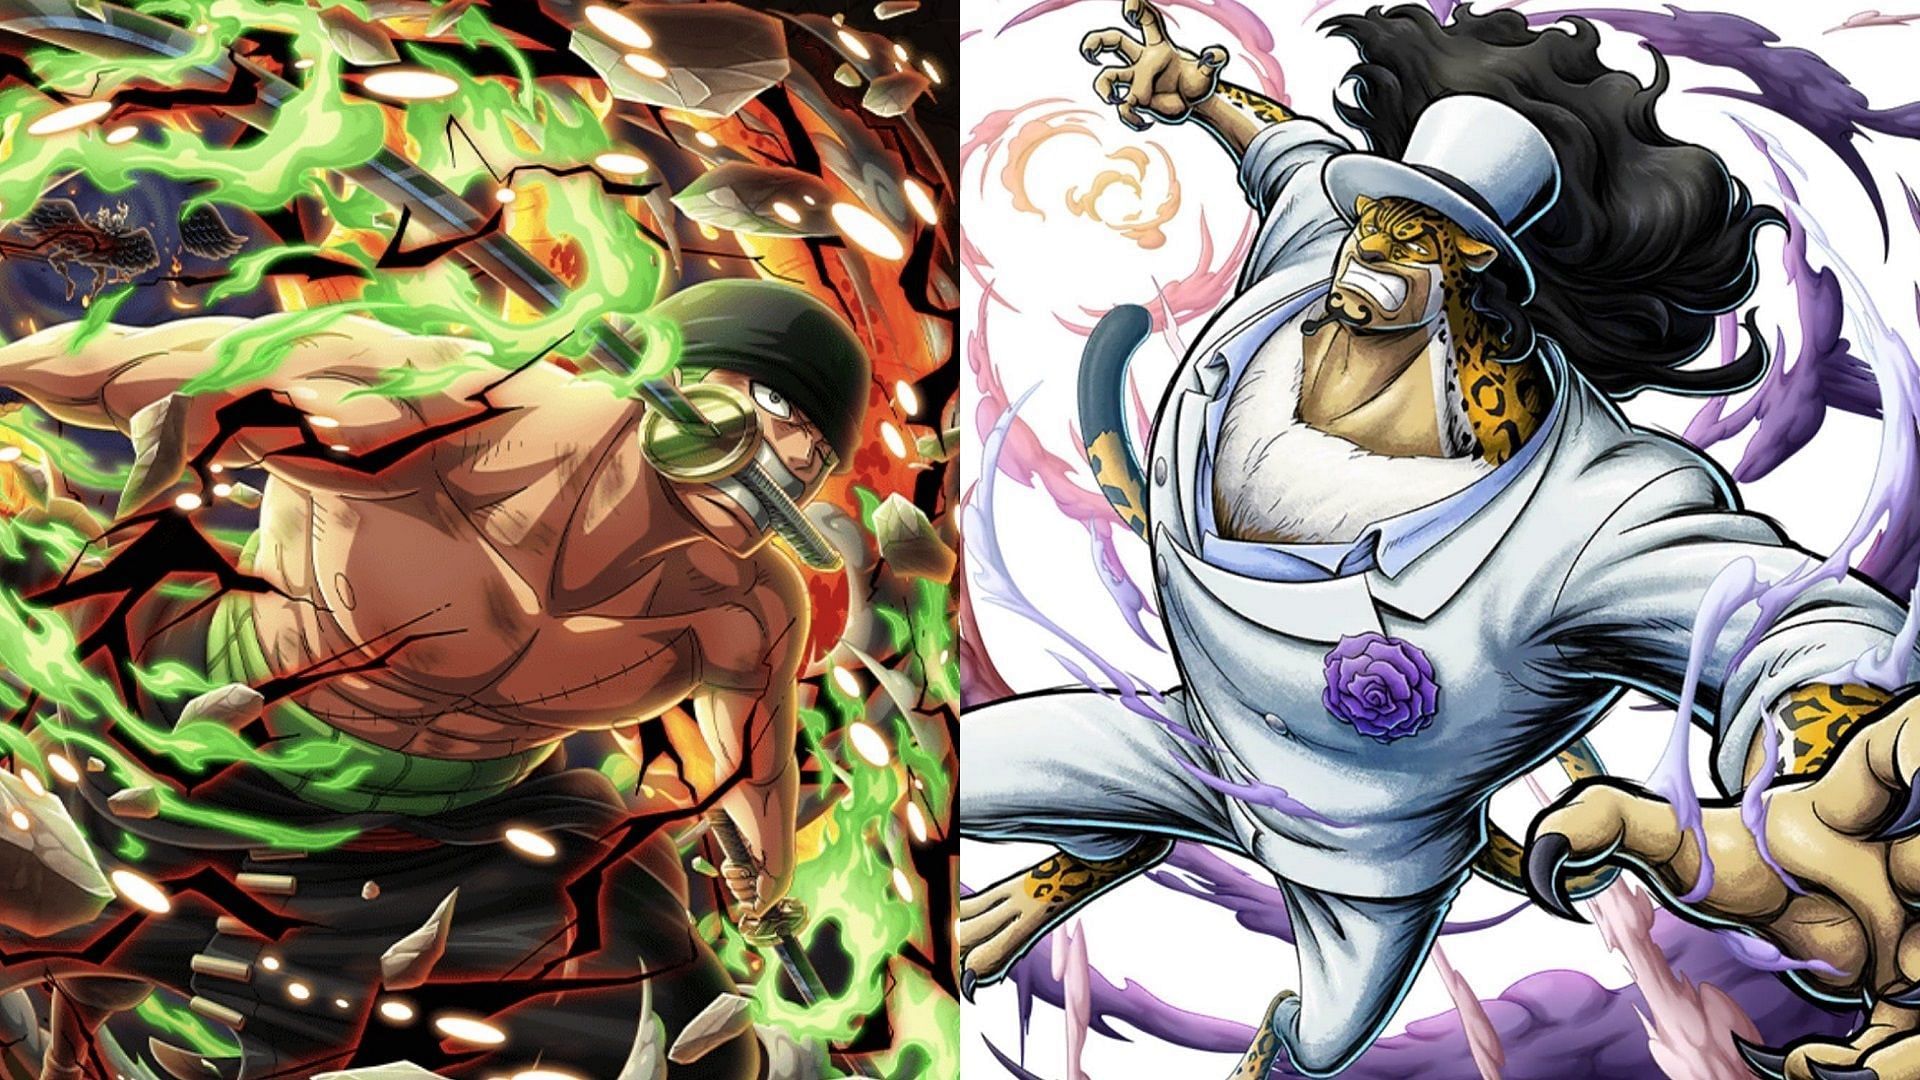 Zoro et Lucci sont tous deux des combattants mortels (Image via Toei Animation, One Piece)